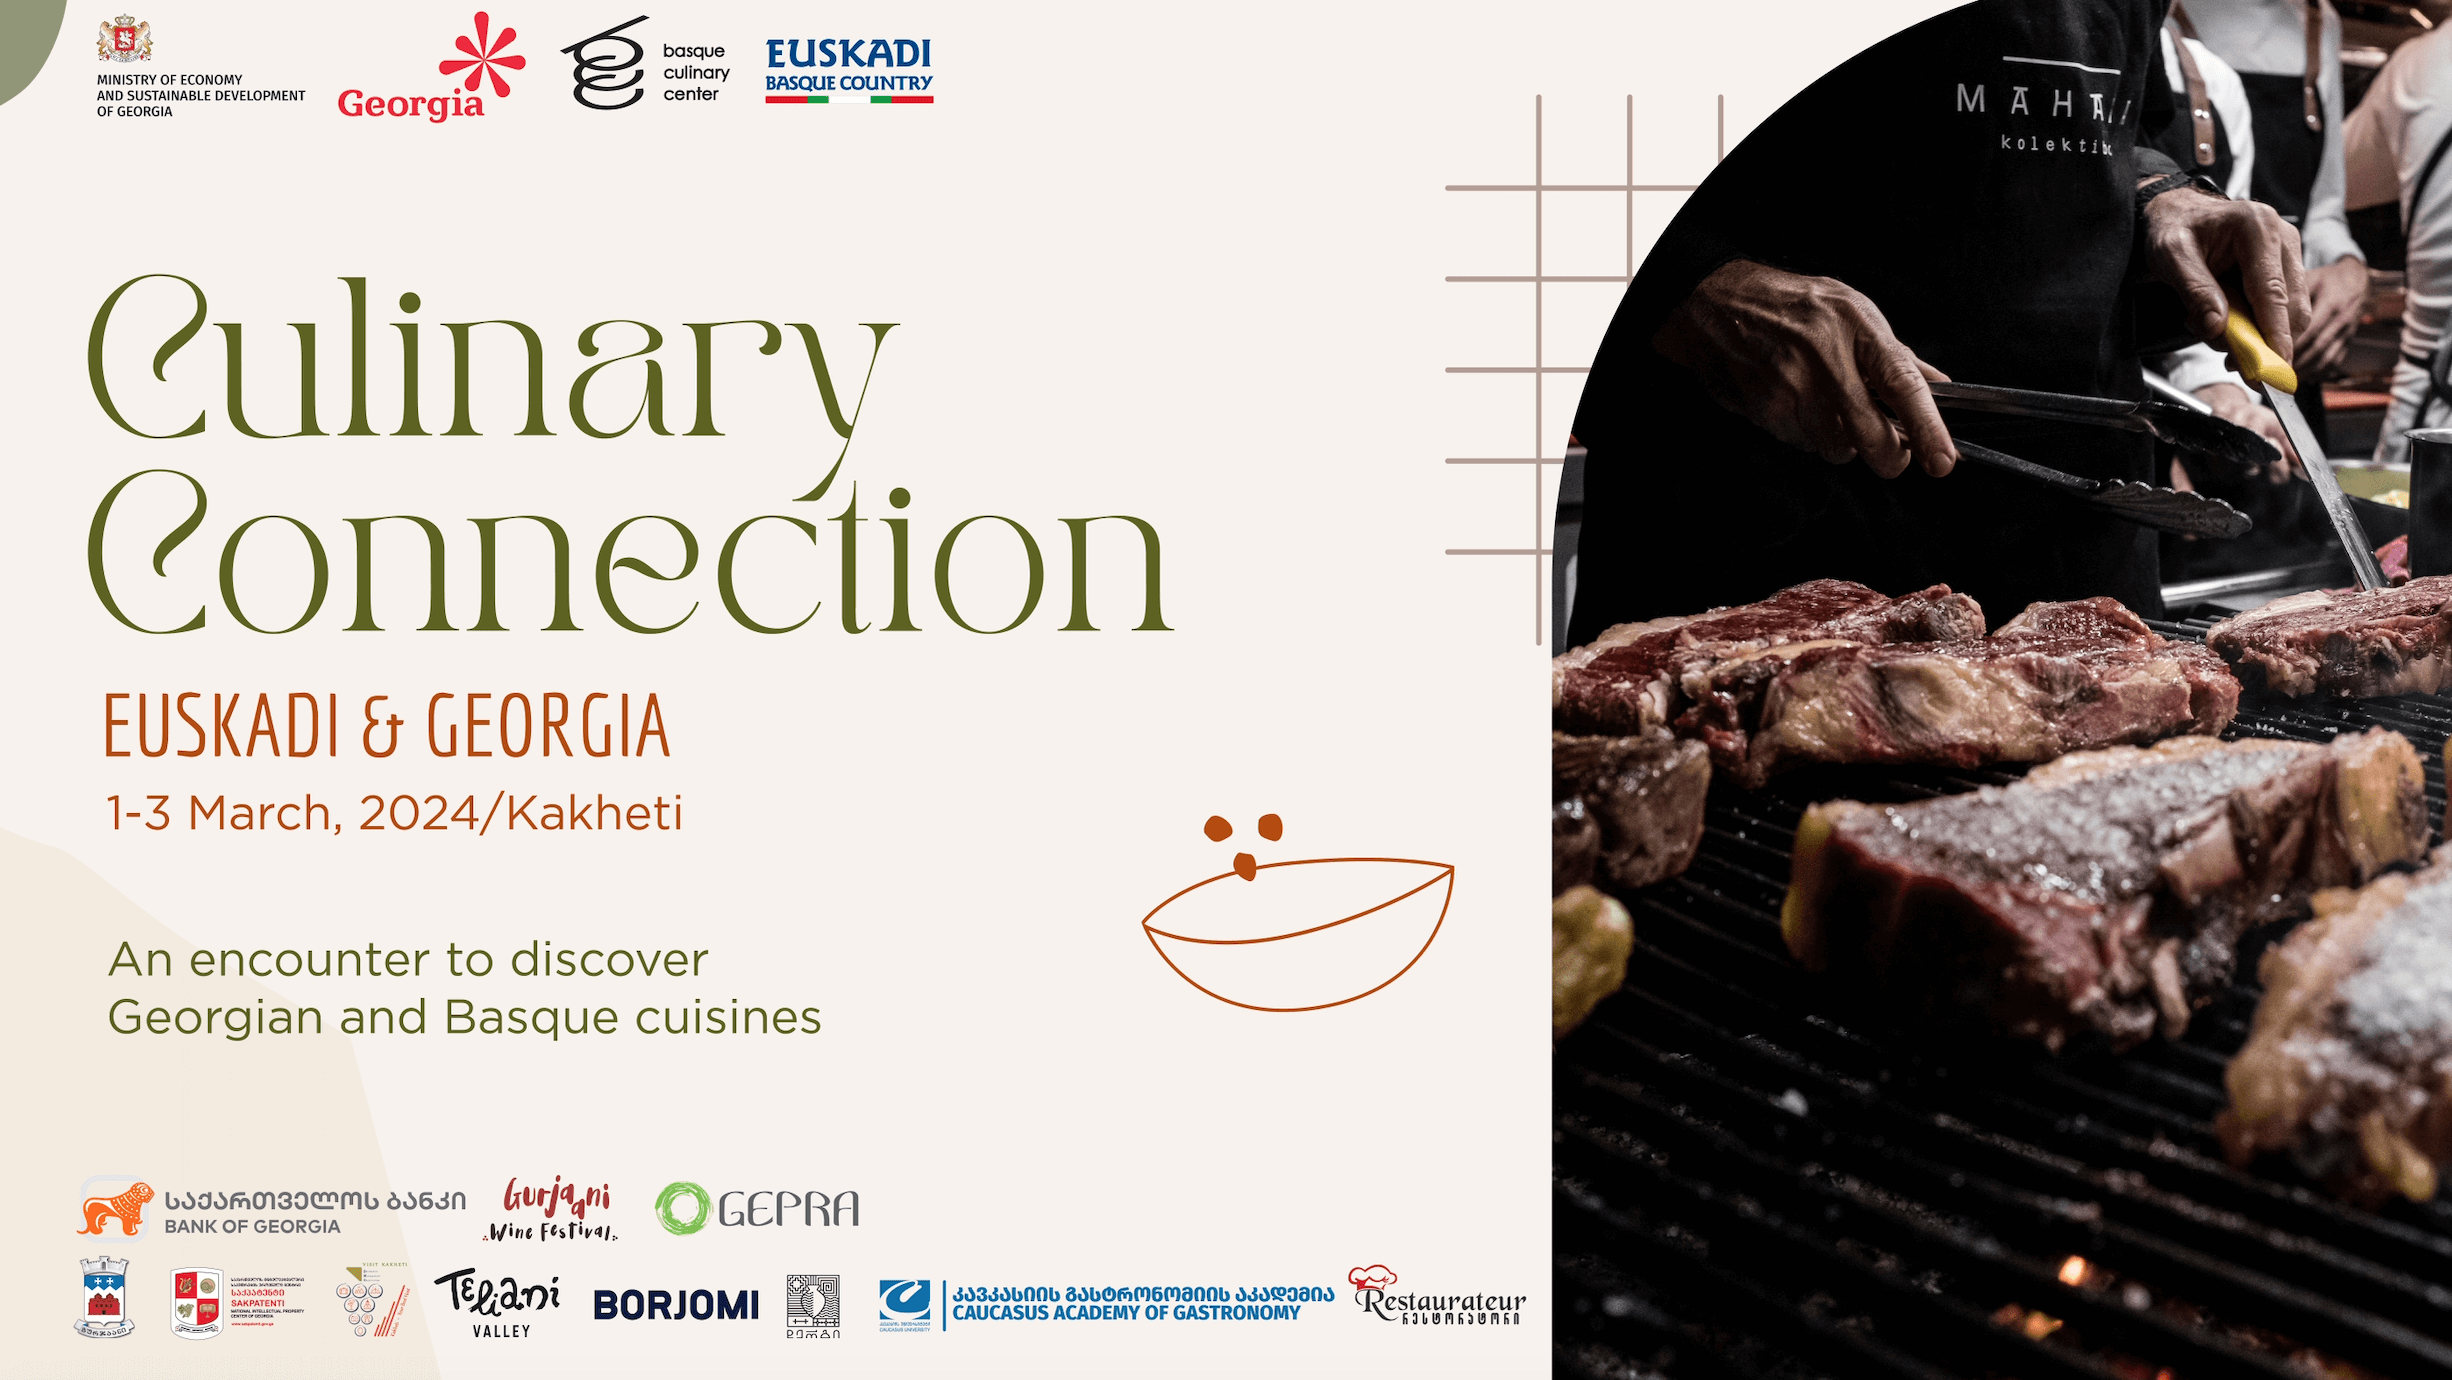 Culinary Connection Euskadi-Georgia: კახეთში ბასკეთი-საქართველოს გასტრონომიული კონგრესი გაიმართება